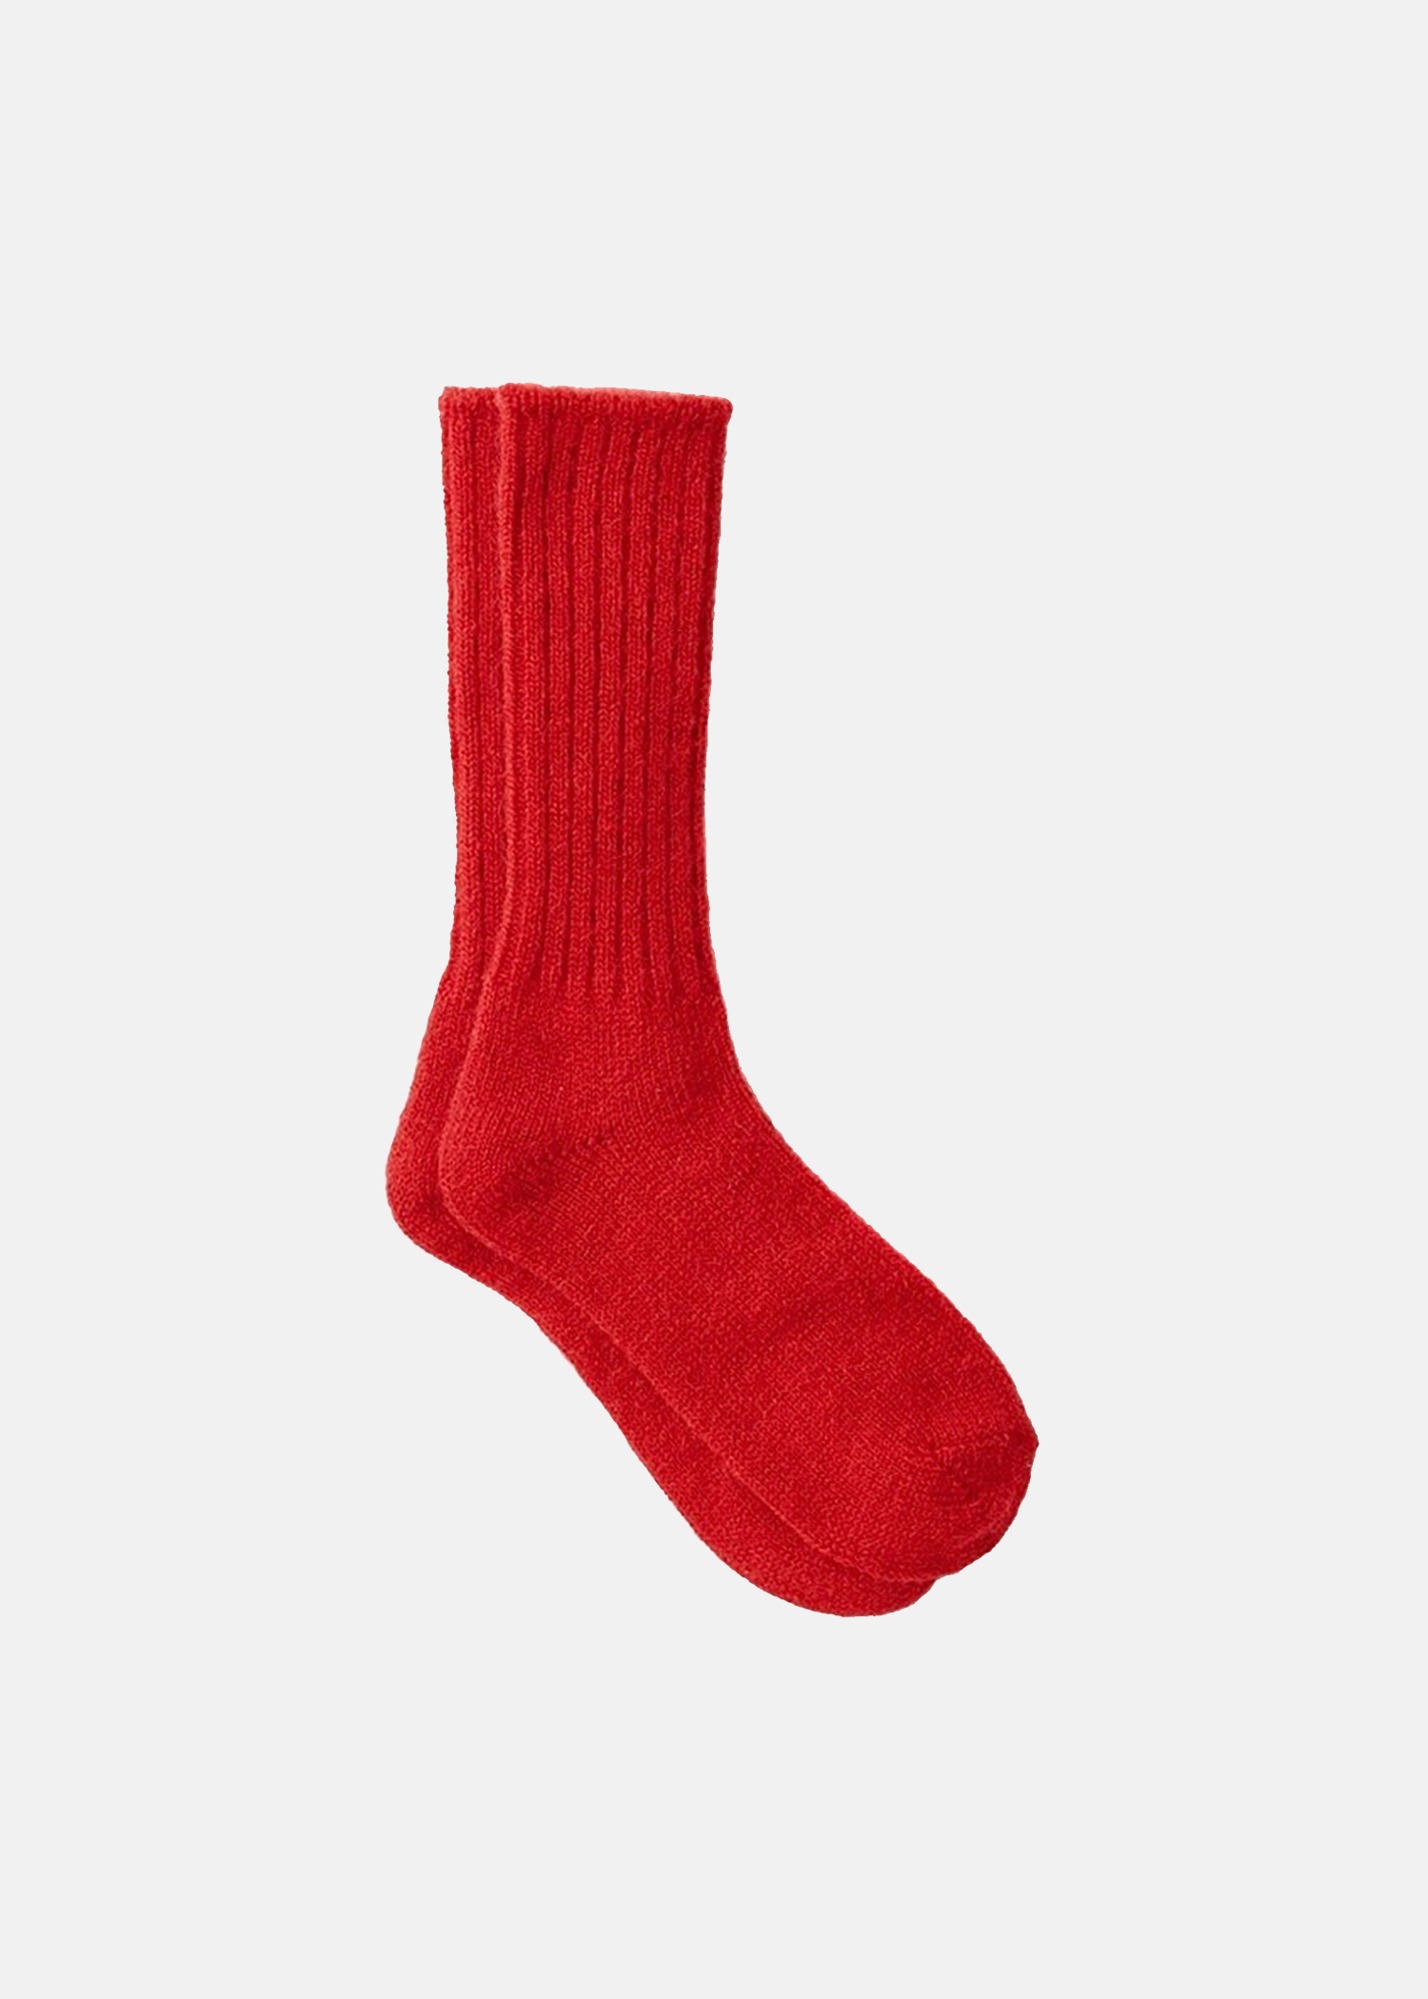 Mohair Socks Red